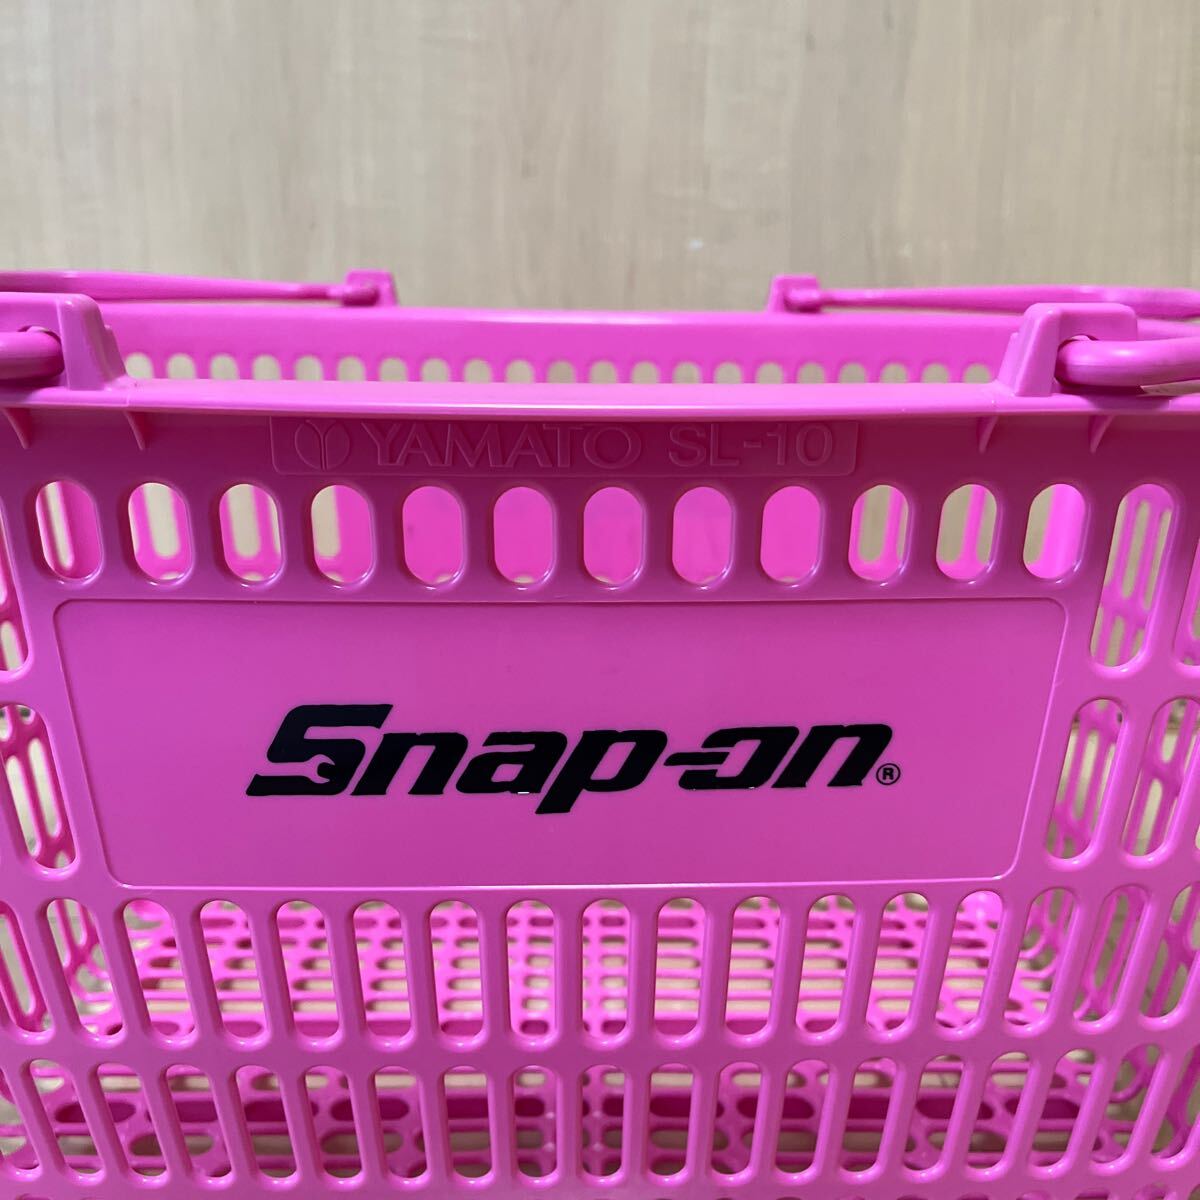 スナップオン コレクターアイテム ショッピングバスケット 買い物かご 限定カラー 新品未使用品の画像3